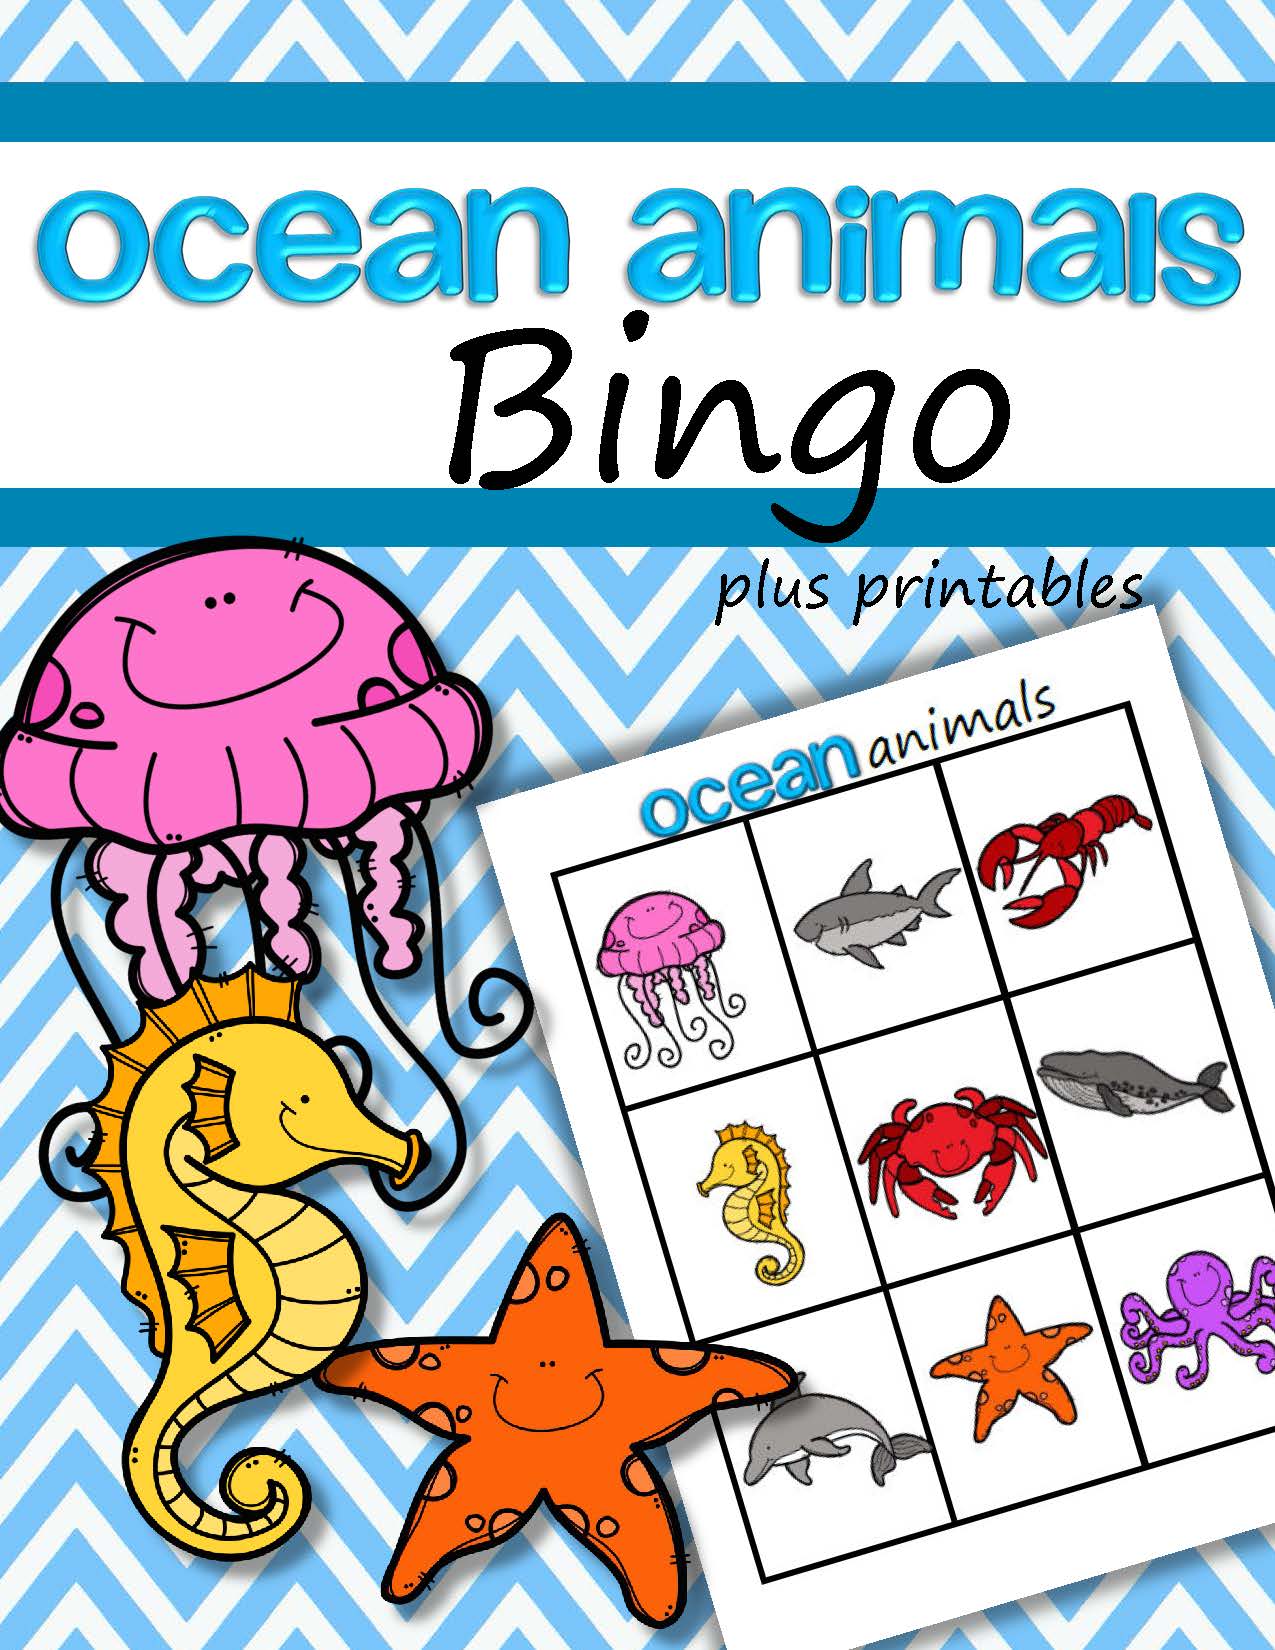 Ocean Animals Bingo game for preschool